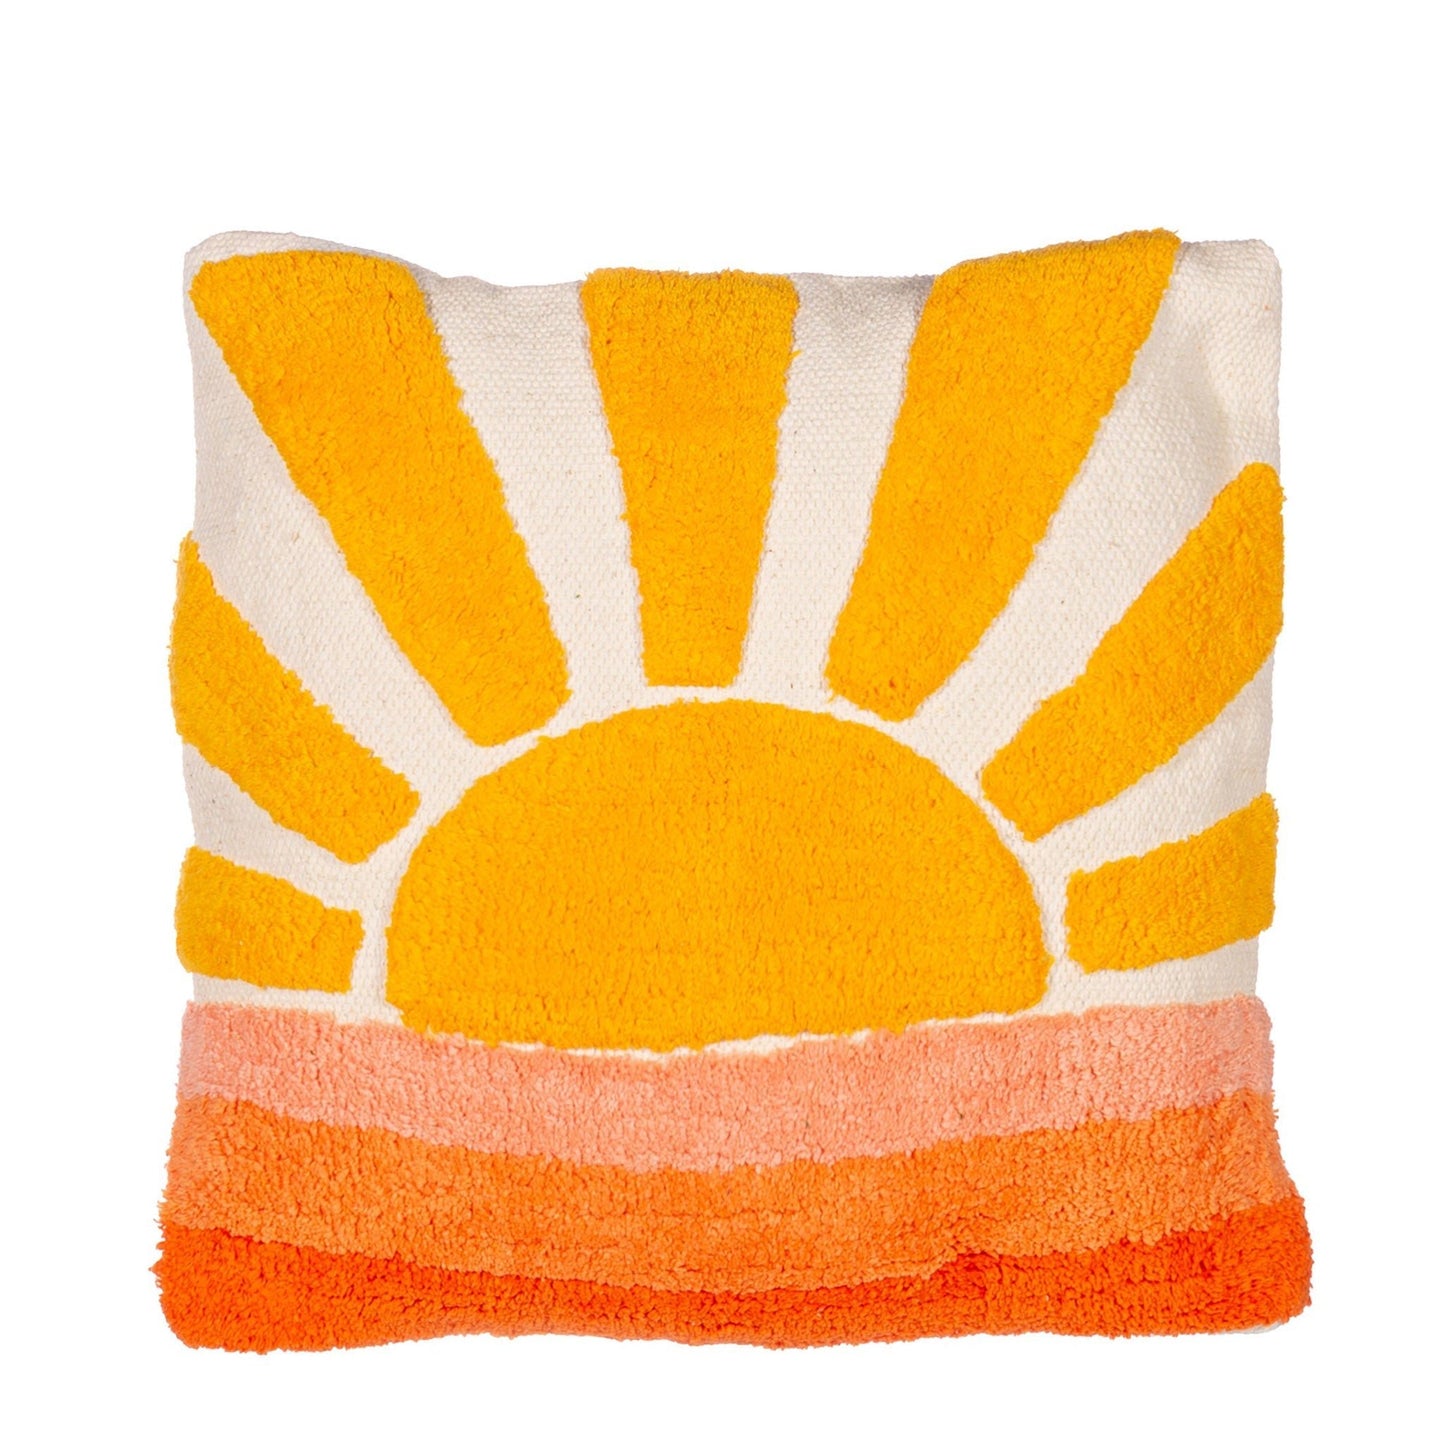 Getuftetes Kissen mit Sonnenuntergang-Motiv - Vandeley